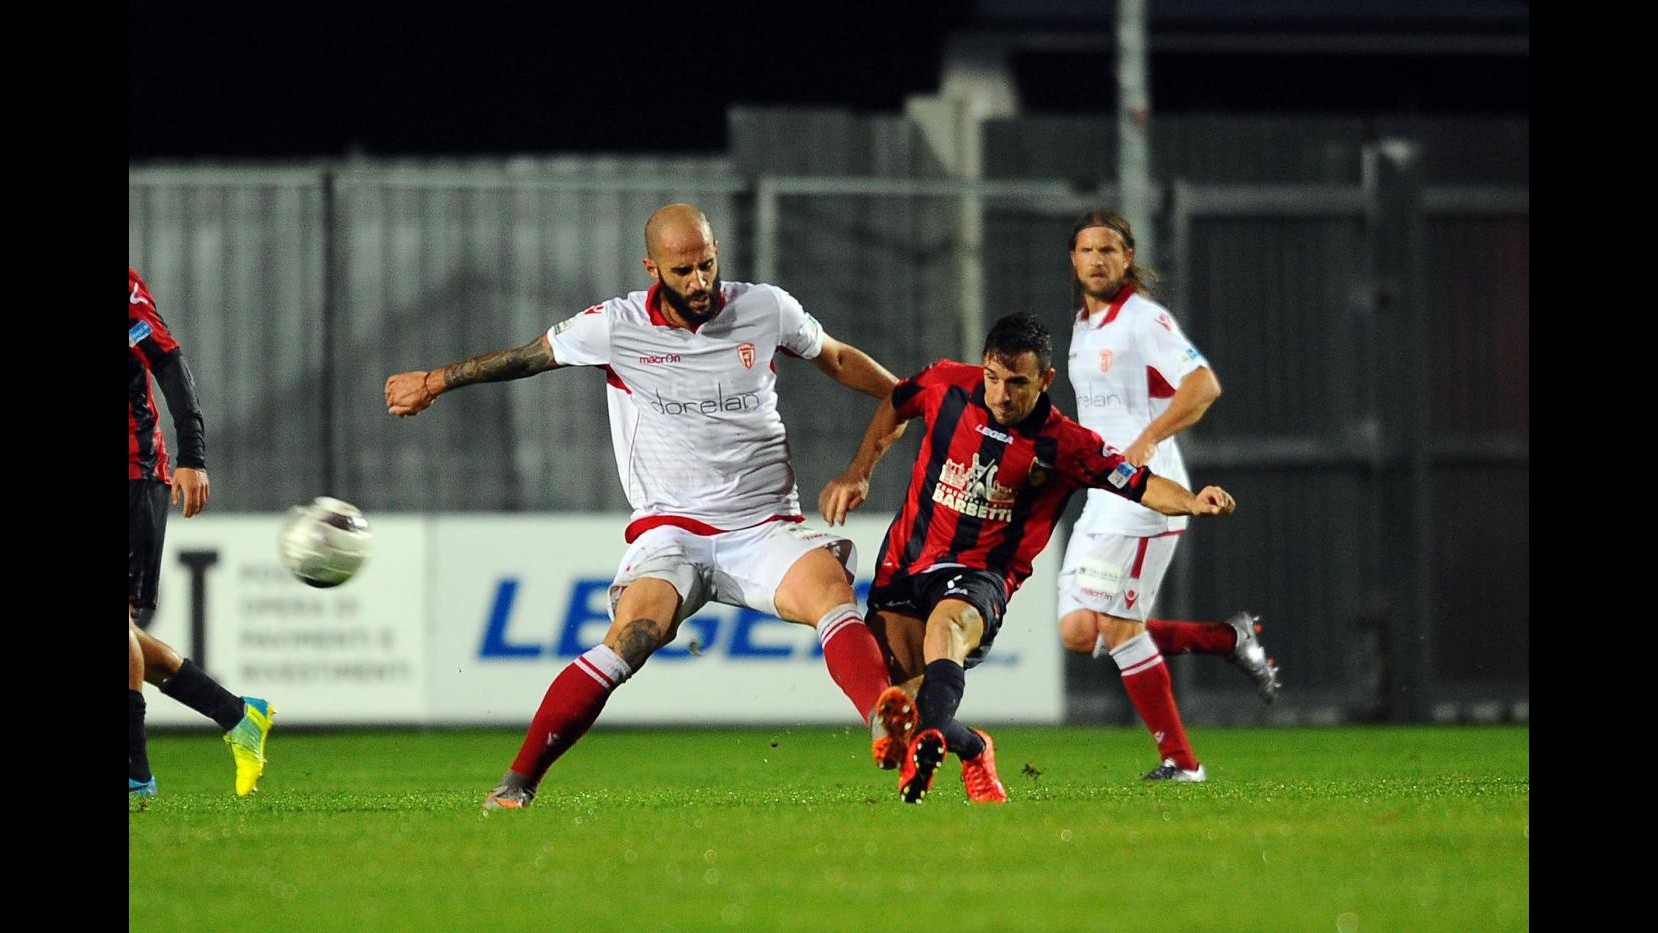 FOTO Lega Pro, Gubbio vs Forlì 1-0